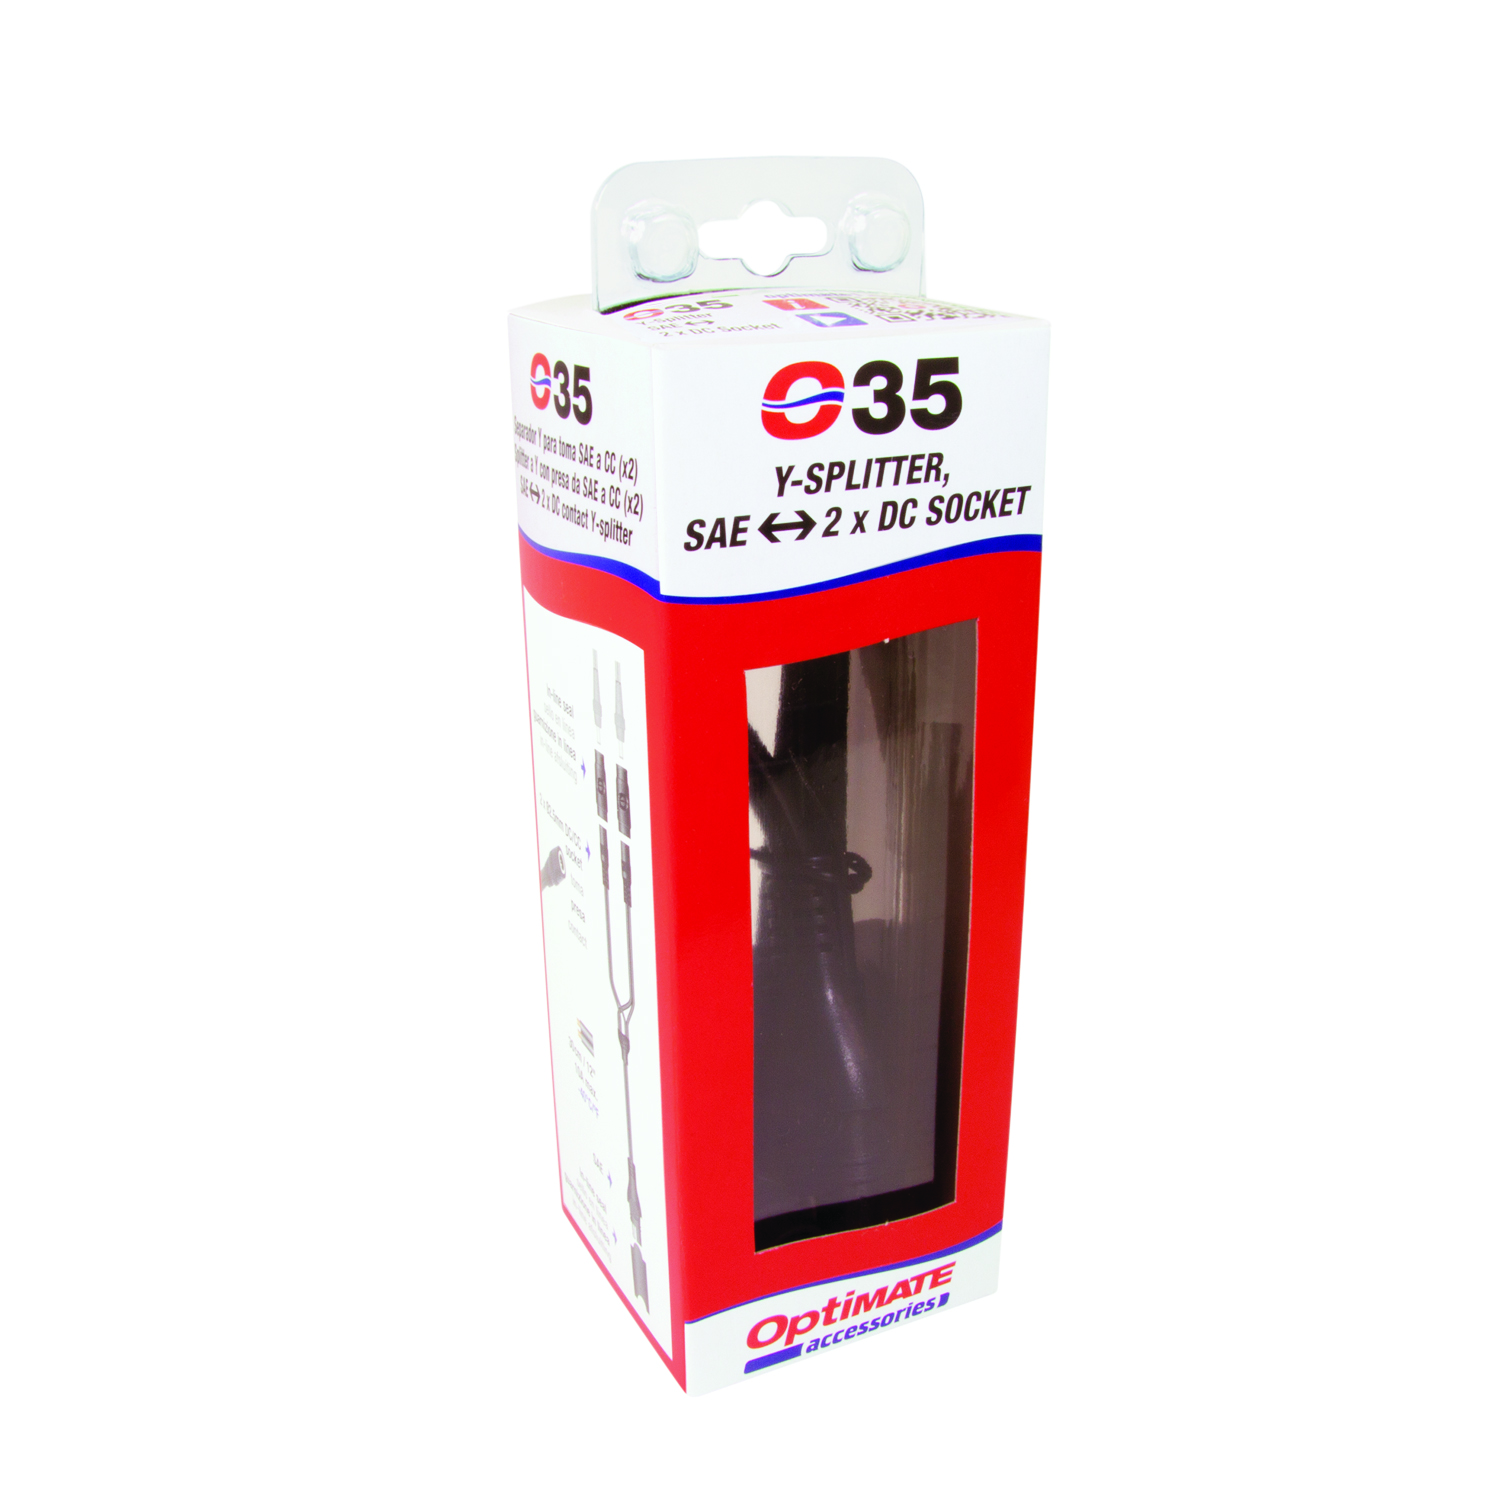 UK Supplier & Warranty NEW 035 OptiMate Y-Splitter Lead SAE to 2 x DC Sockets 